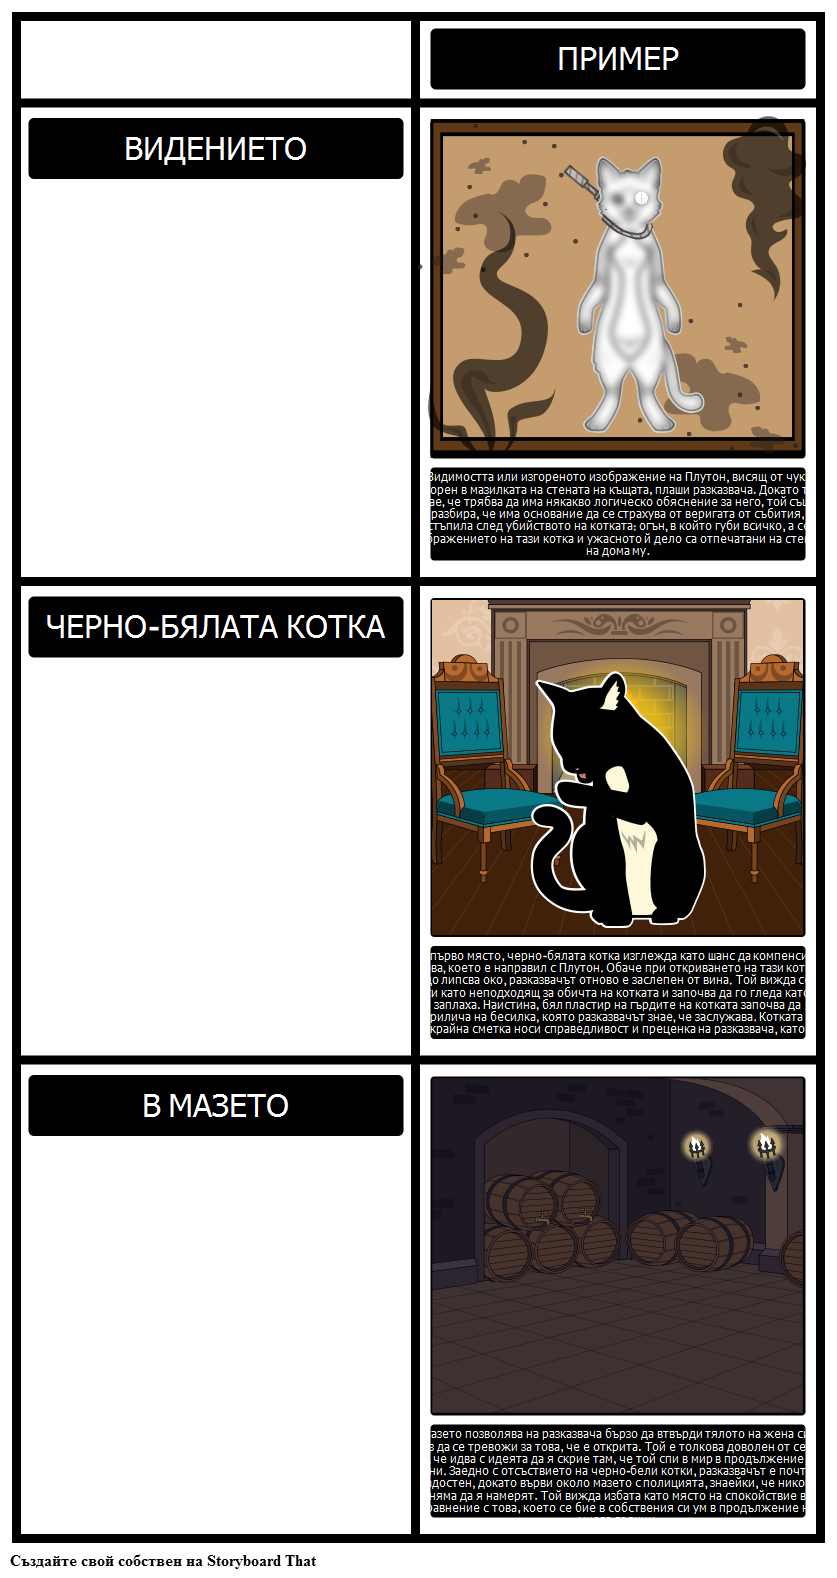 Теми, Символи и Мотиви в "Черната Котка"